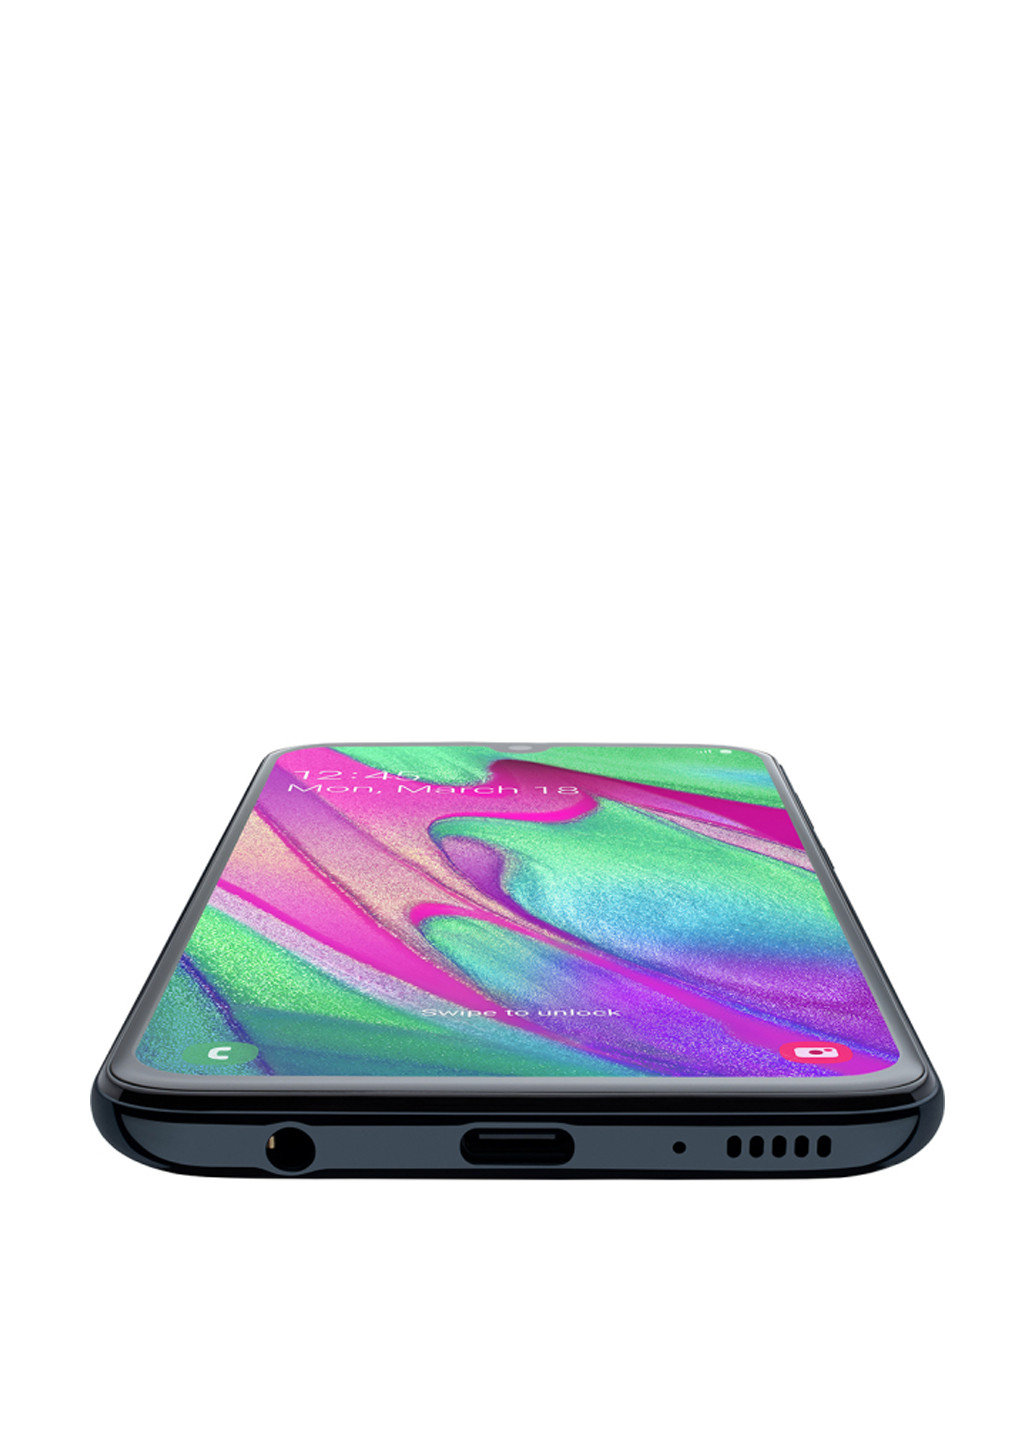 Смартфон Galaxy A40 4 / 64GB Black (SM-A405FZKDSEK) Samsung Galaxy A40 4/64GB Black (SM-A405FZKDSEK) комбінований